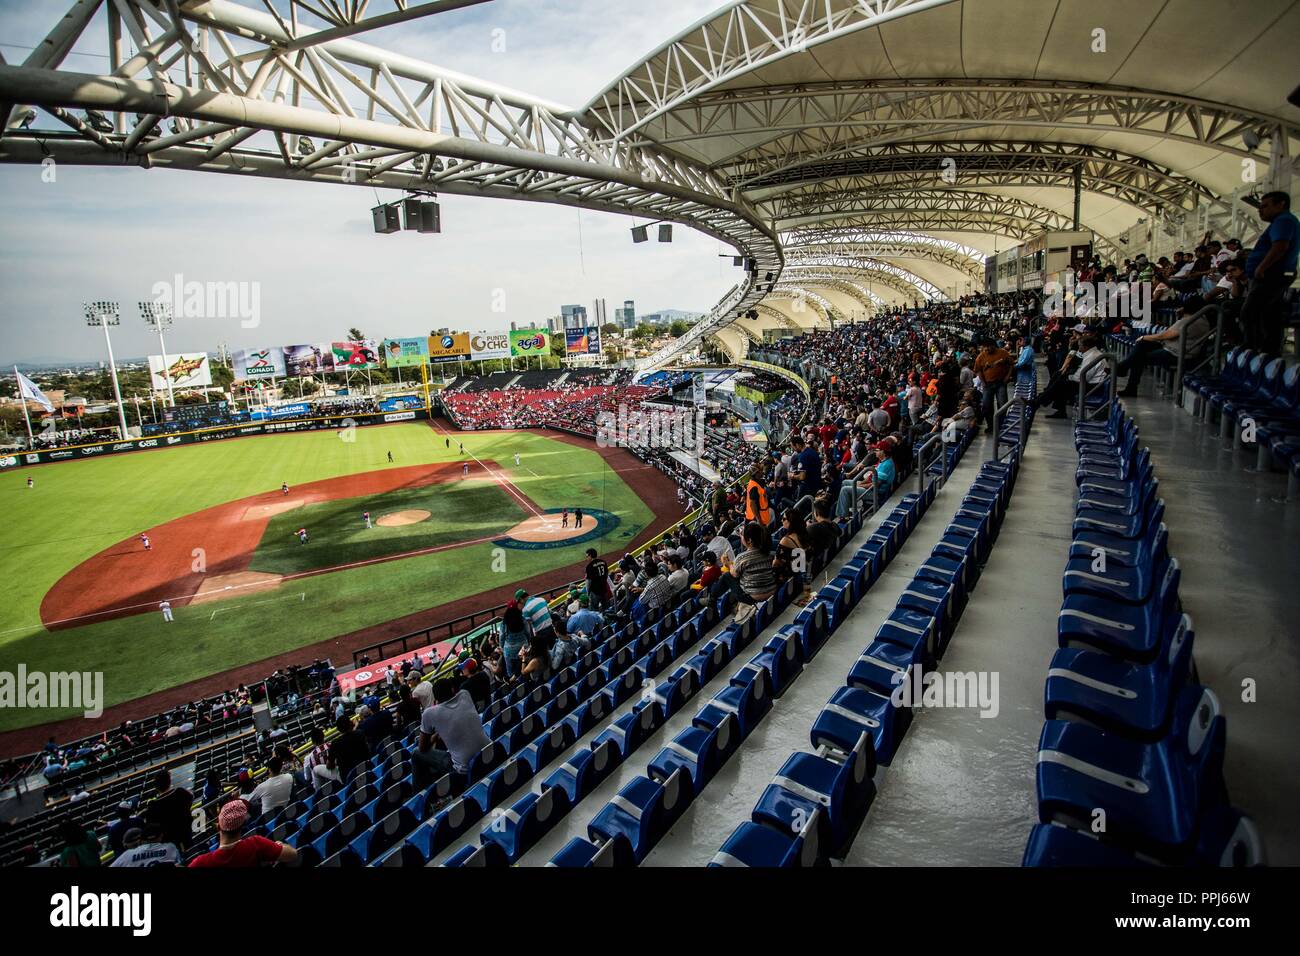 Estadio de Beisbol Charros de Jalisco - All You Need to Know BEFORE You Go  (with Photos)